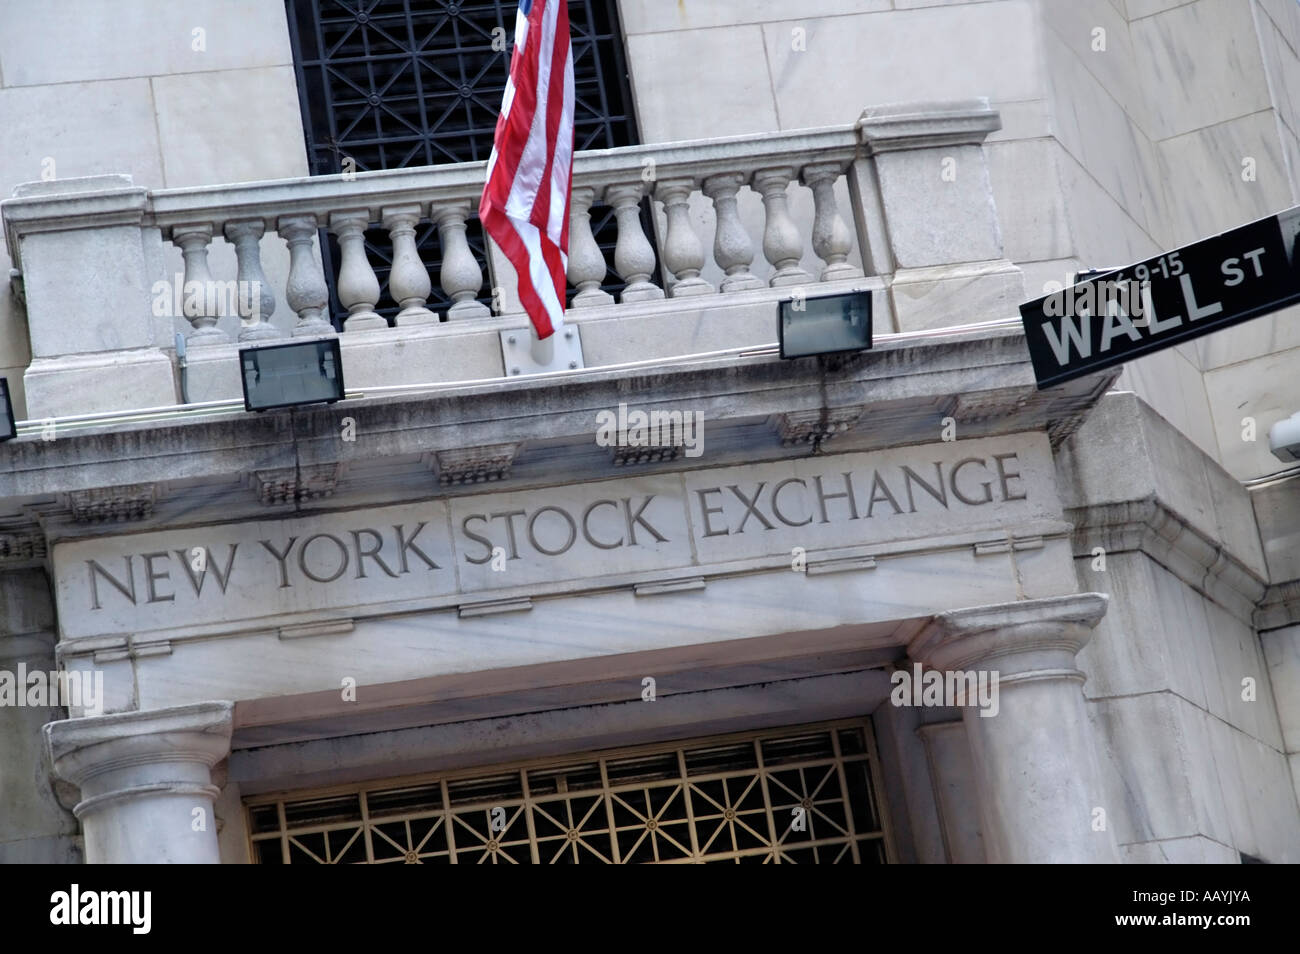 L'entrée de Wall Street à New York Stock Exchange building Banque D'Images